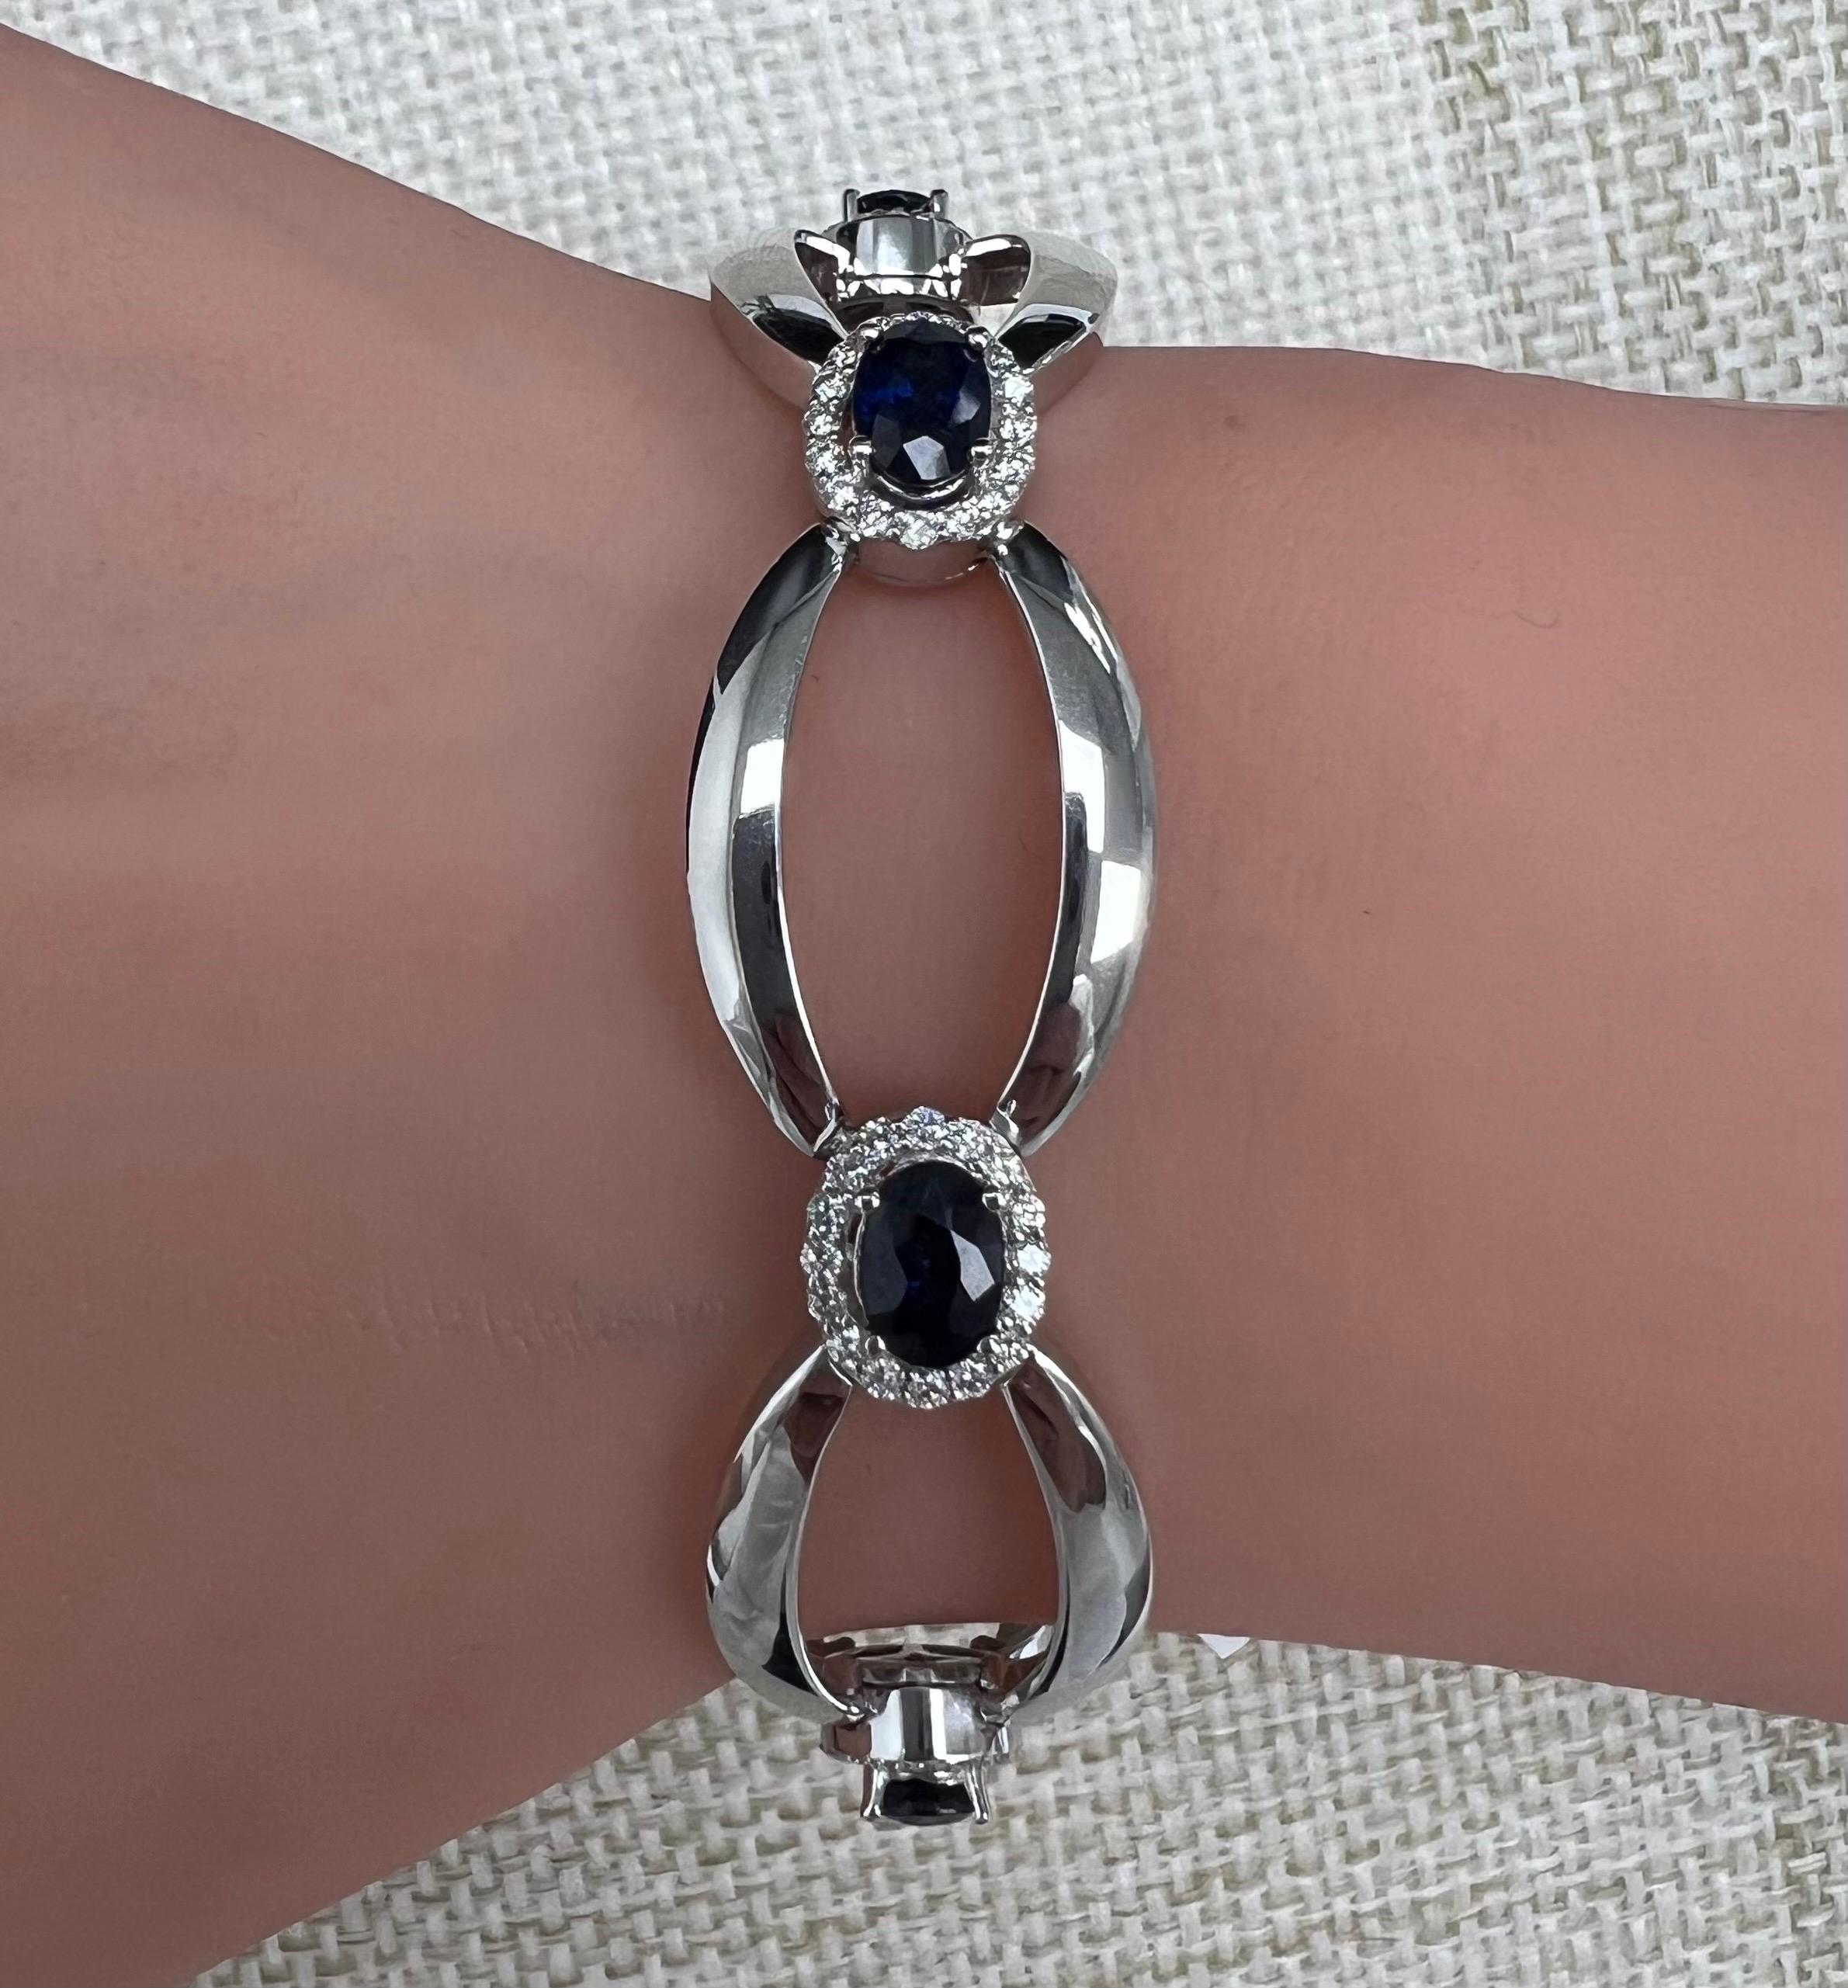 Brilliant Cut 14K Diamond Bracelet, 6 Oval Blue Sapphires, 1.36 CT D, 6.75 CT Sap, All Natural For Sale